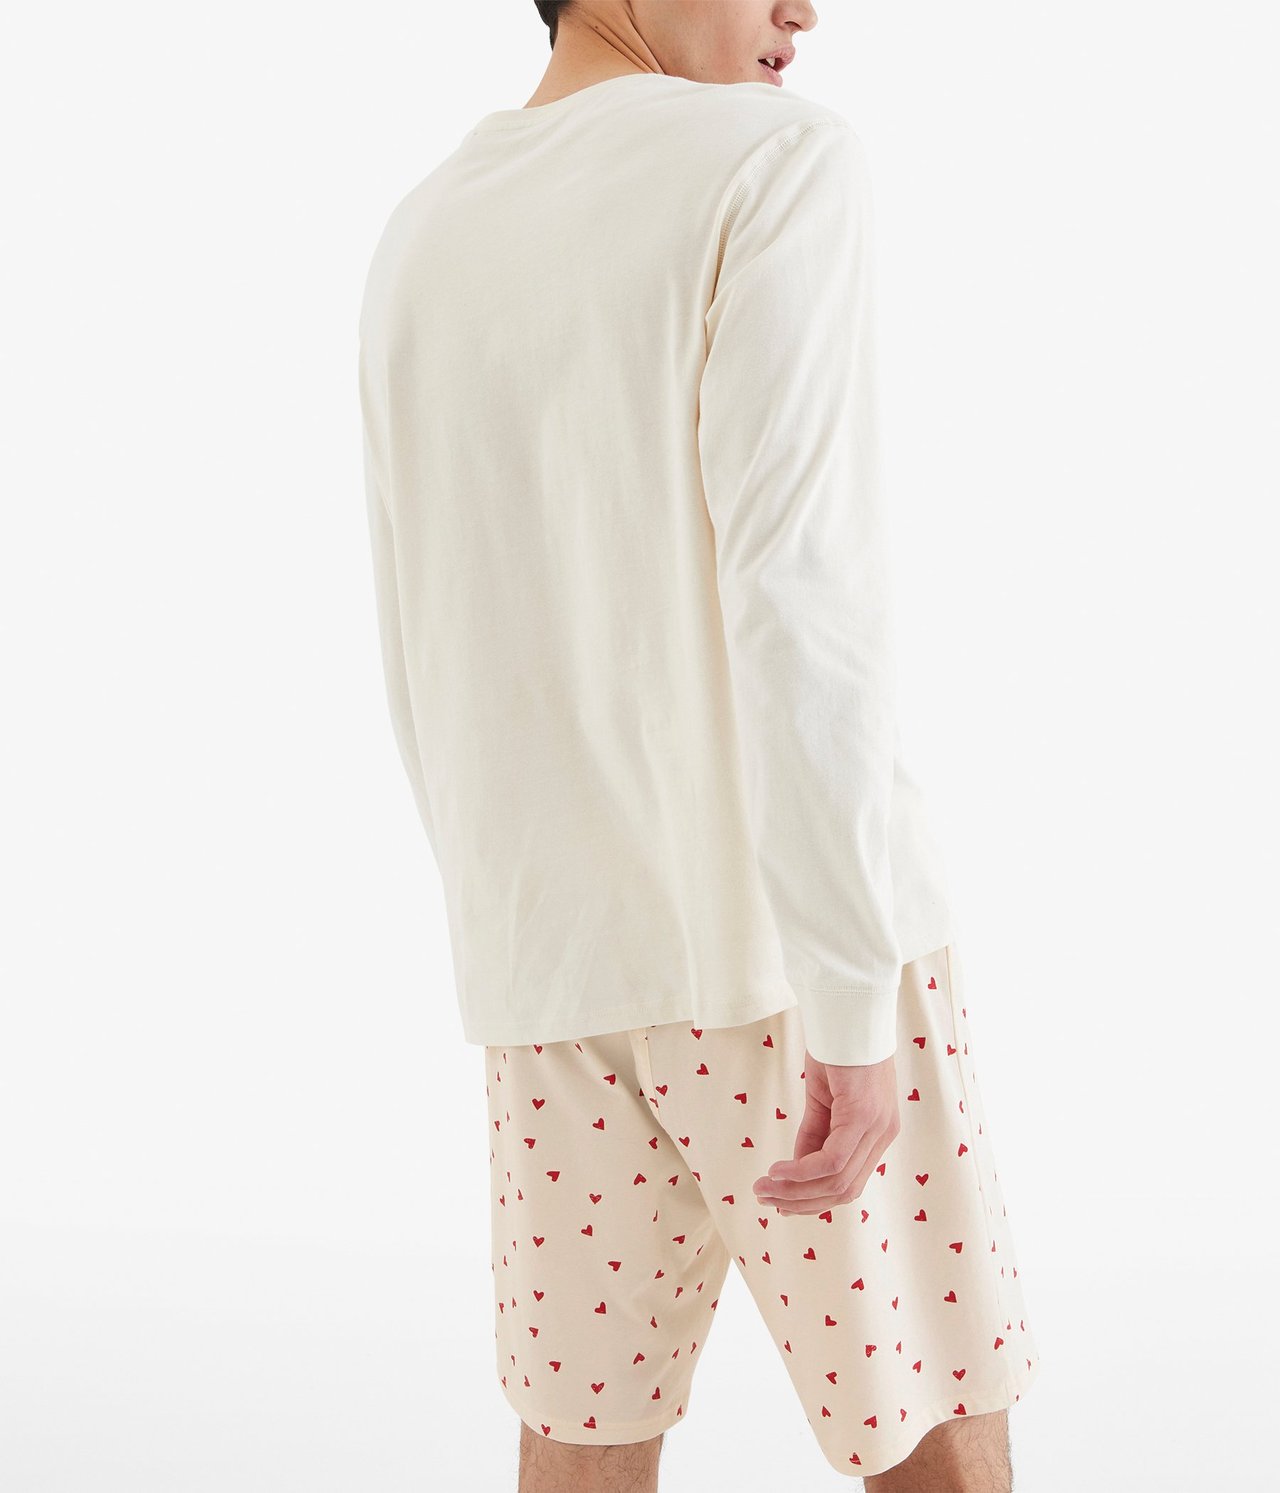 Sydänkuvioiset pyjamashortsit Luonnonvalkoinen - null - 5